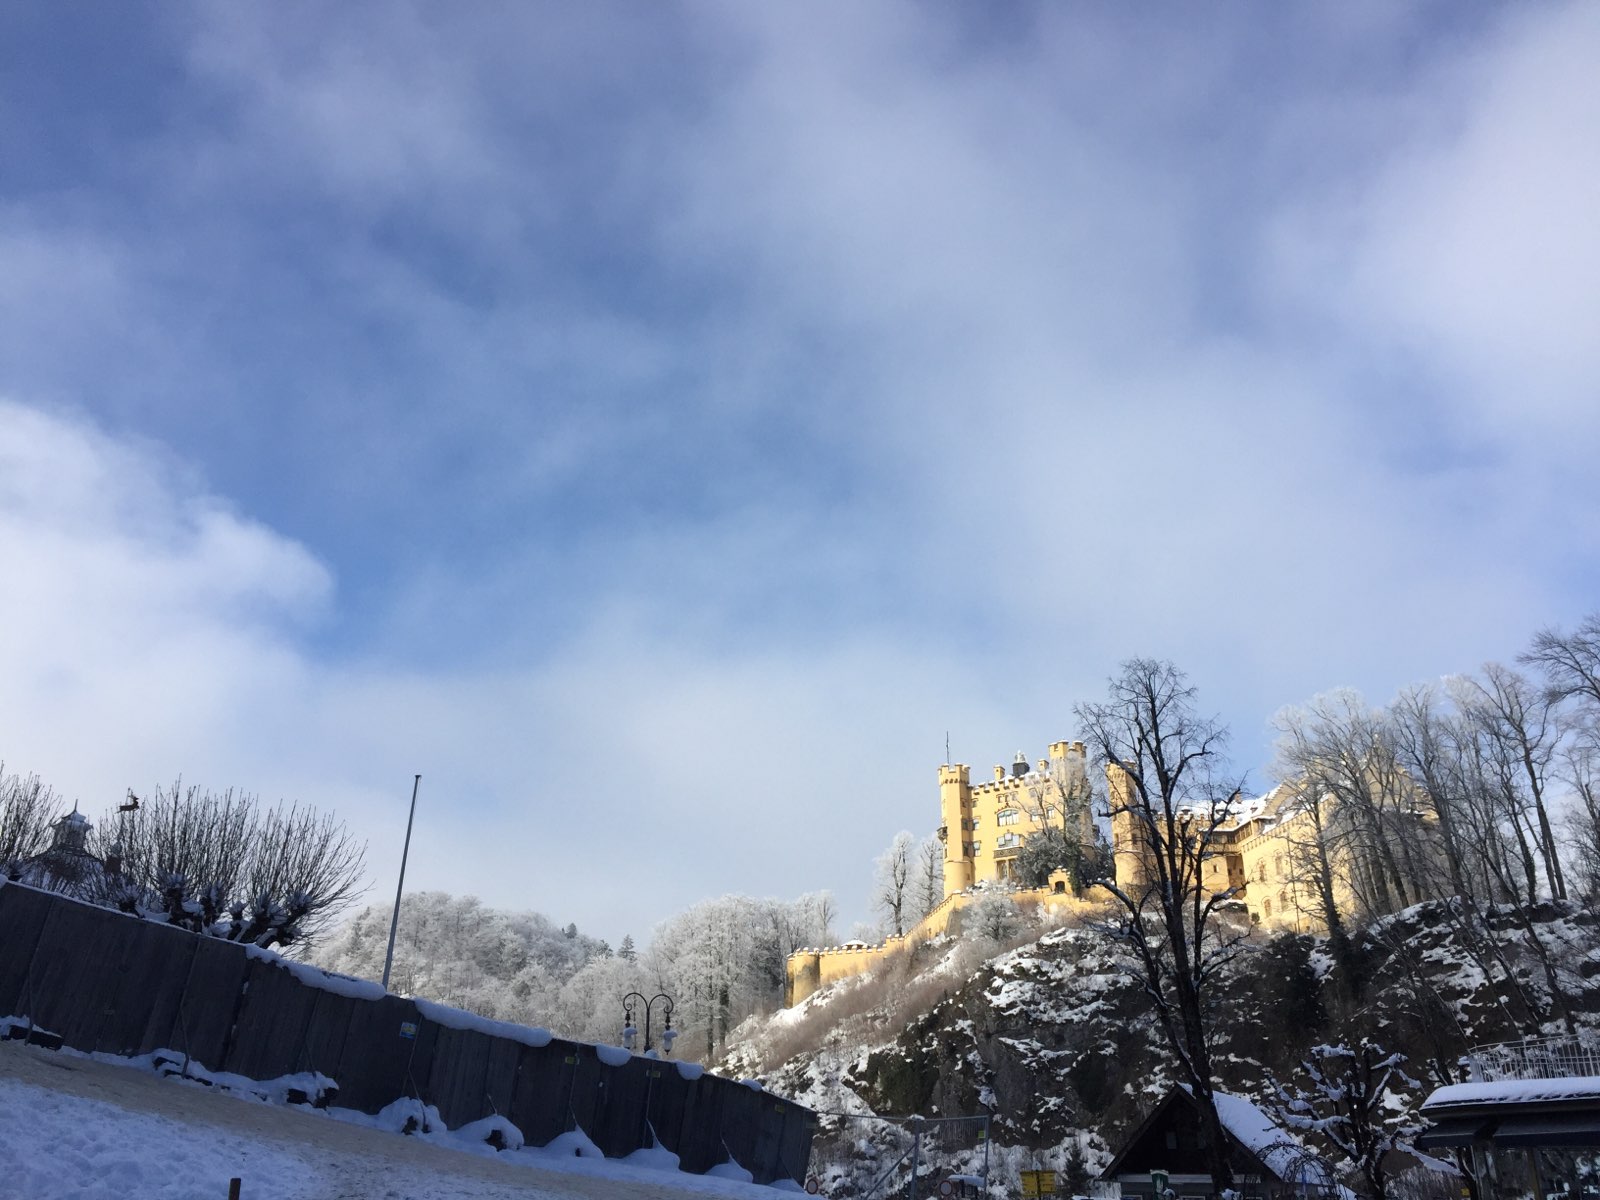 早上雾蒙蒙的只能看到影子，等参观完城堡内部下山时，阳光照散了晨雾，露出